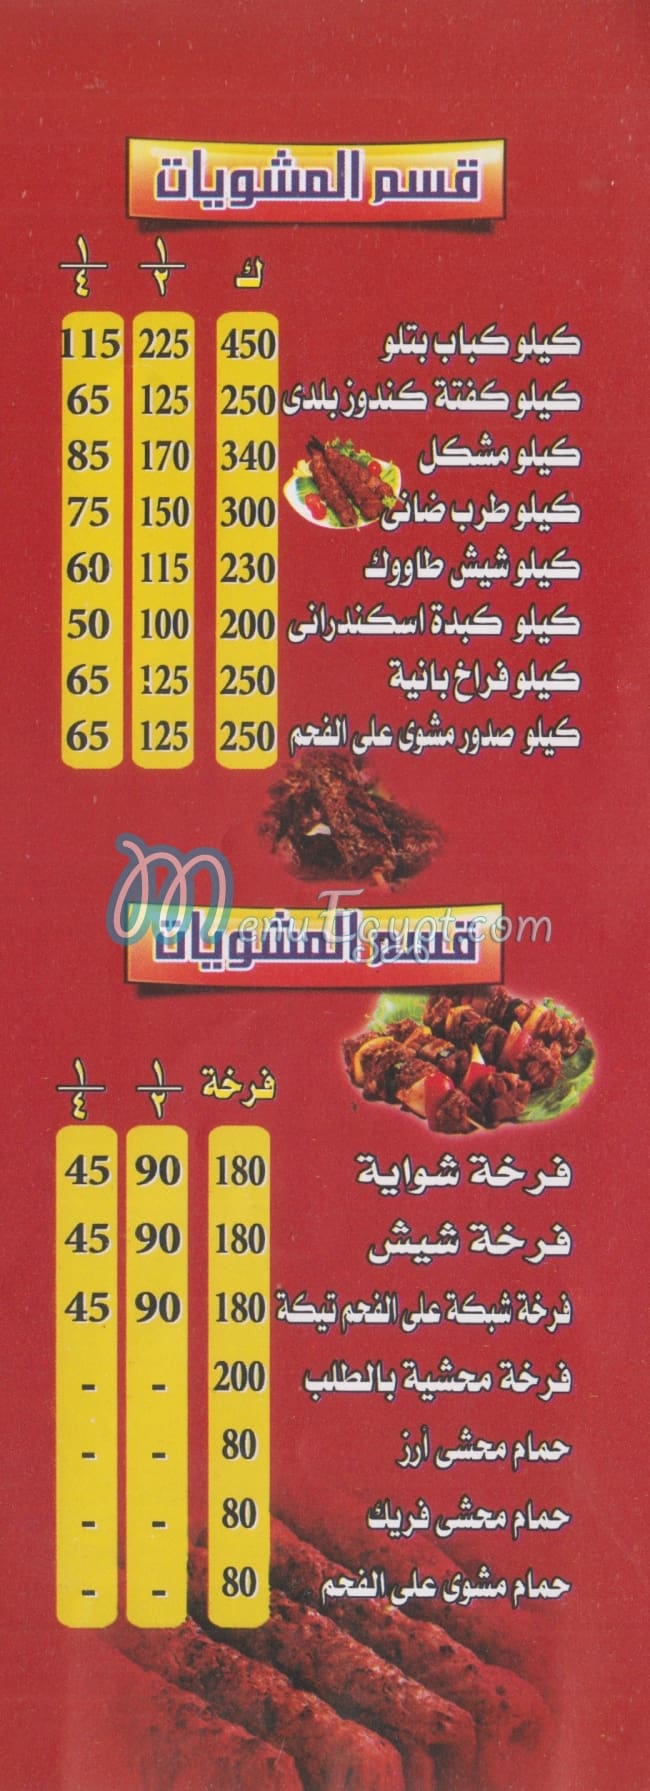 El Fayoumi Grill egypt